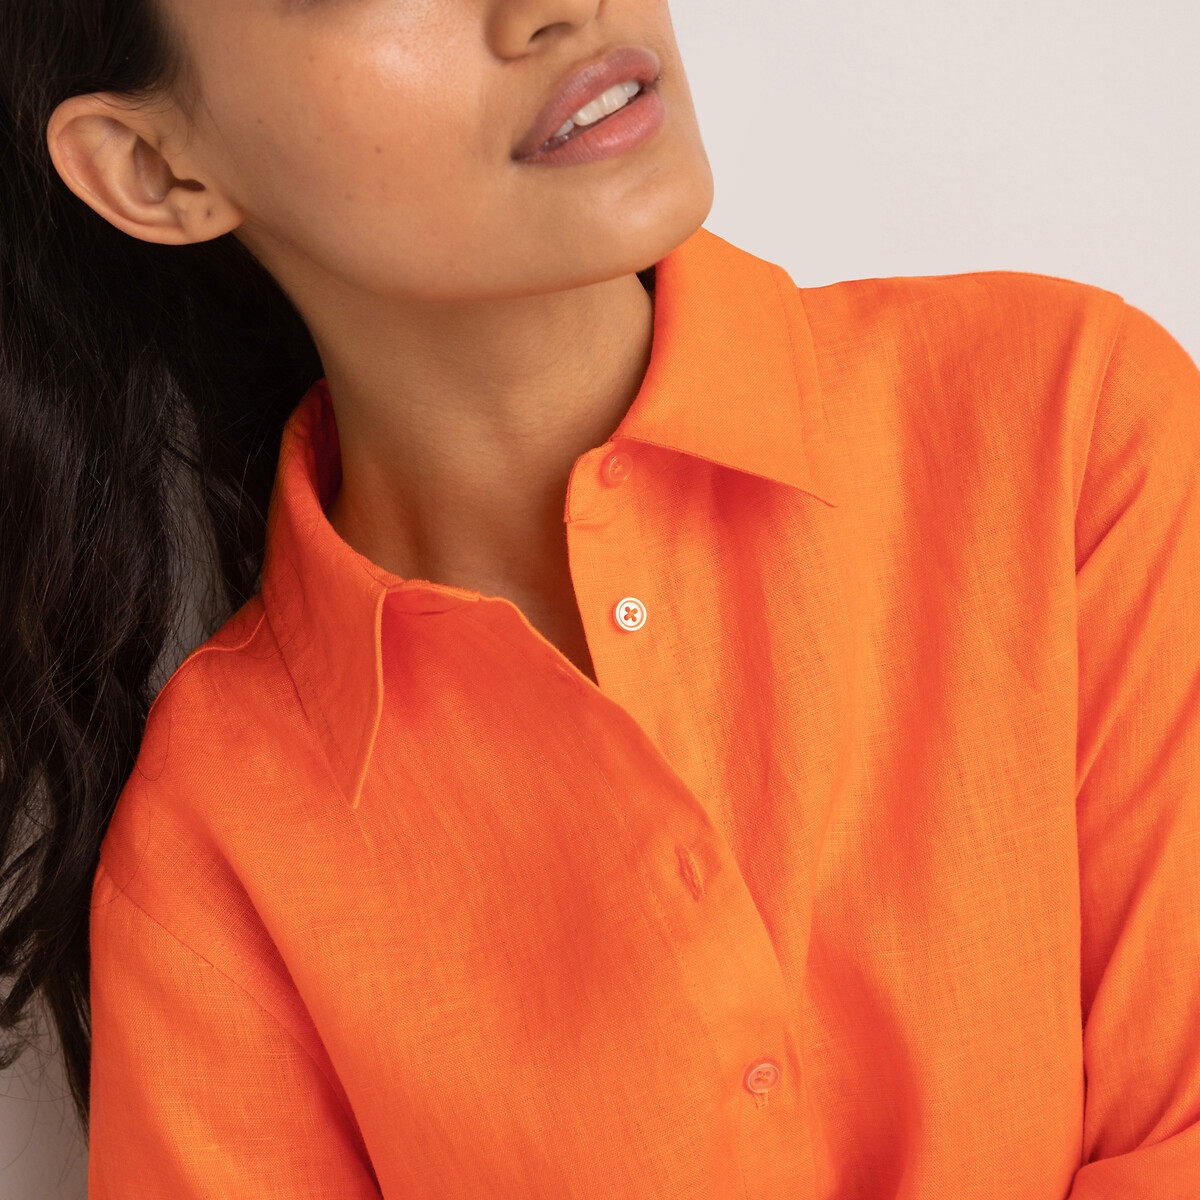 Рубашка Из льна с длинными рукавами 46 (FR) - 52 (RUS) оранжевый LaRedoute, размер 46 (FR) - 52 (RUS) Рубашка Из льна с длинными рукавами 46 (FR) - 52 (RUS) оранжевый - фото 1